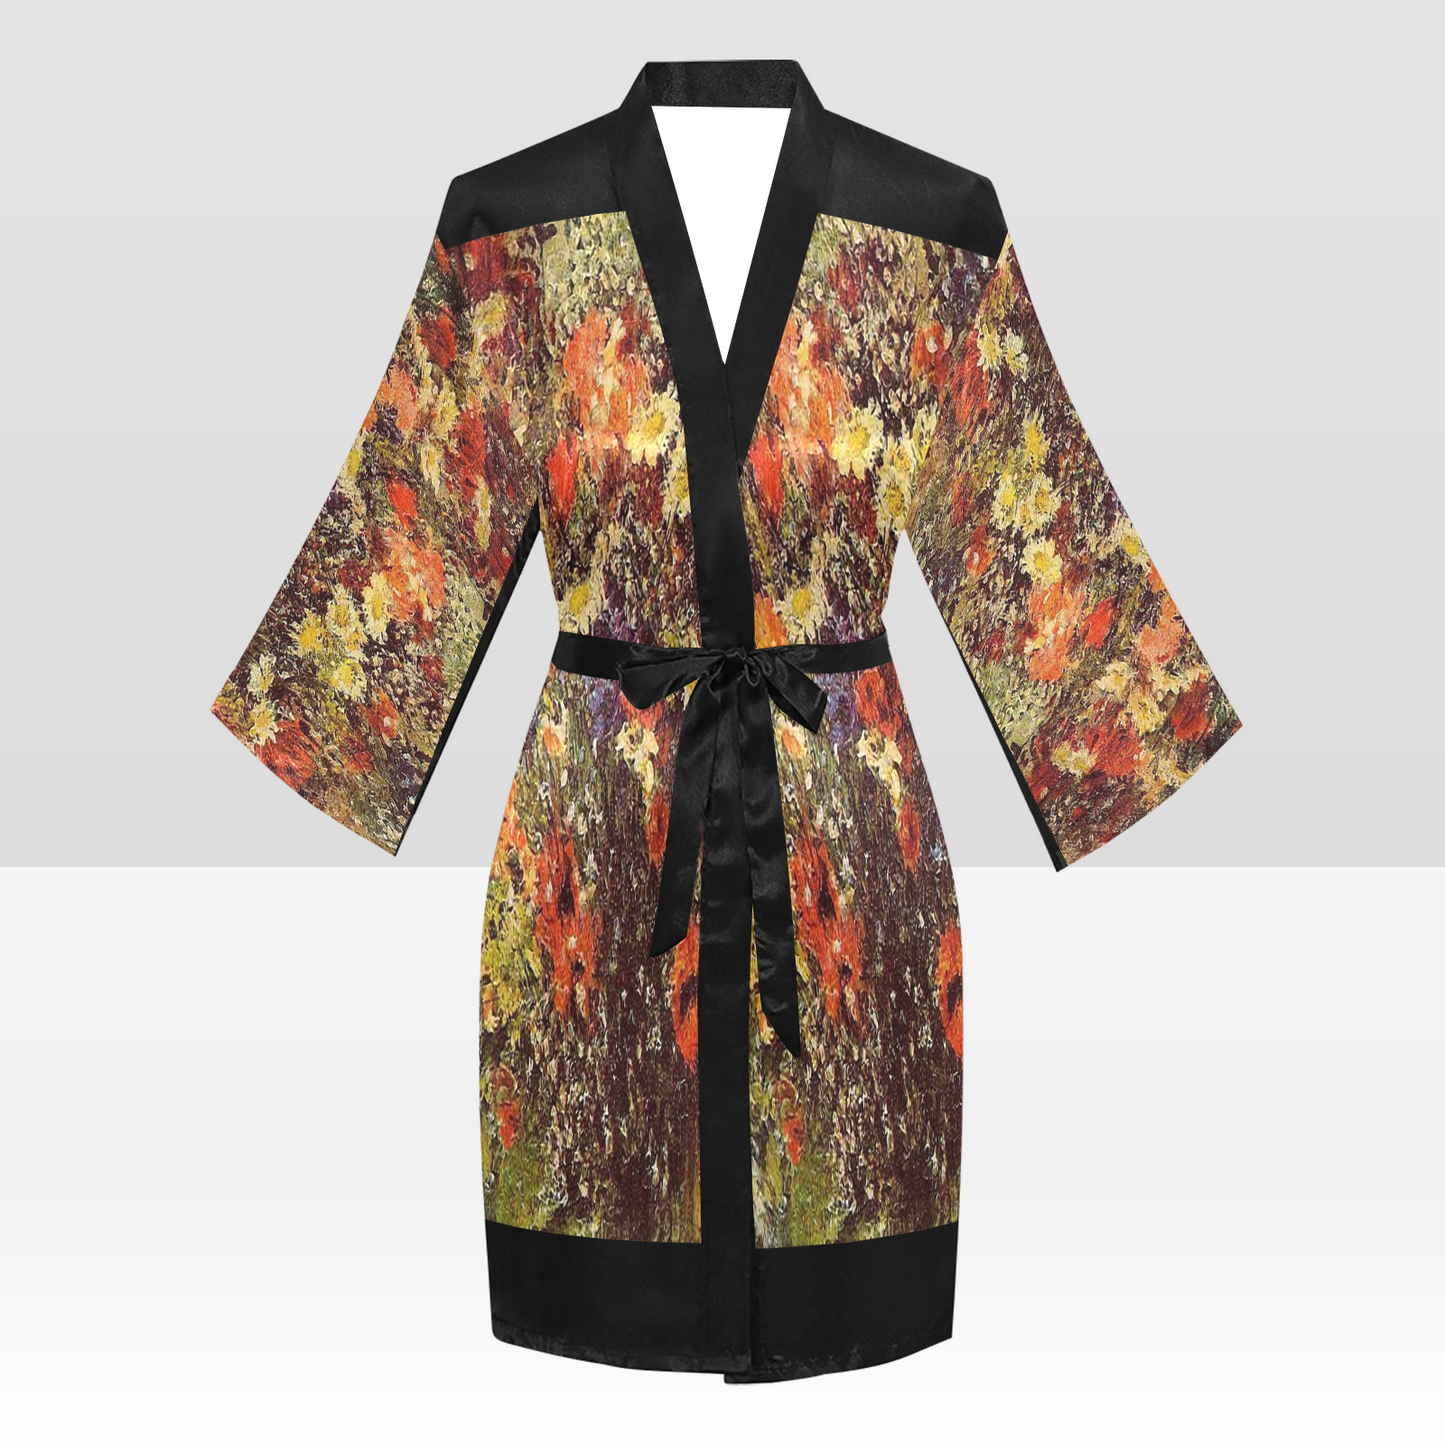 Vintage Floral Kimono Robe, Black or White Trim, Sizes XS to 2XL, Design 24